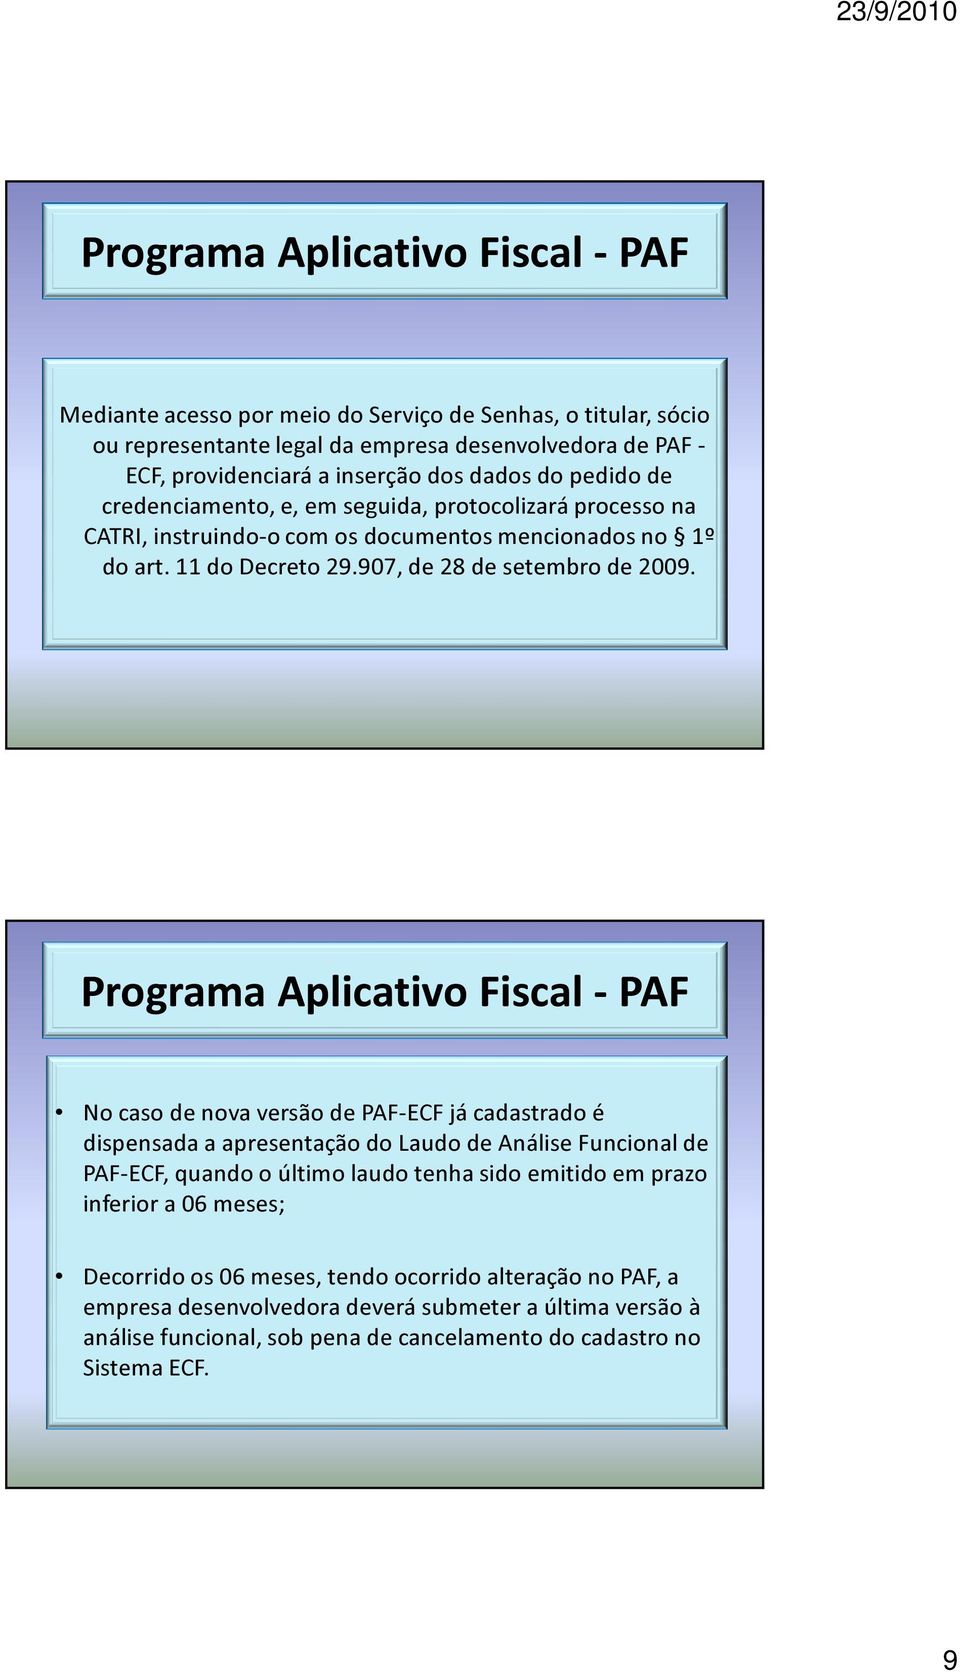 No caso de nova versão de PAF-ECF já cadastrado é dispensada a apresentação do Laudo de Análise Funcional de PAF-ECF, quando o último laudo tenha sido emitido em prazo inferior a